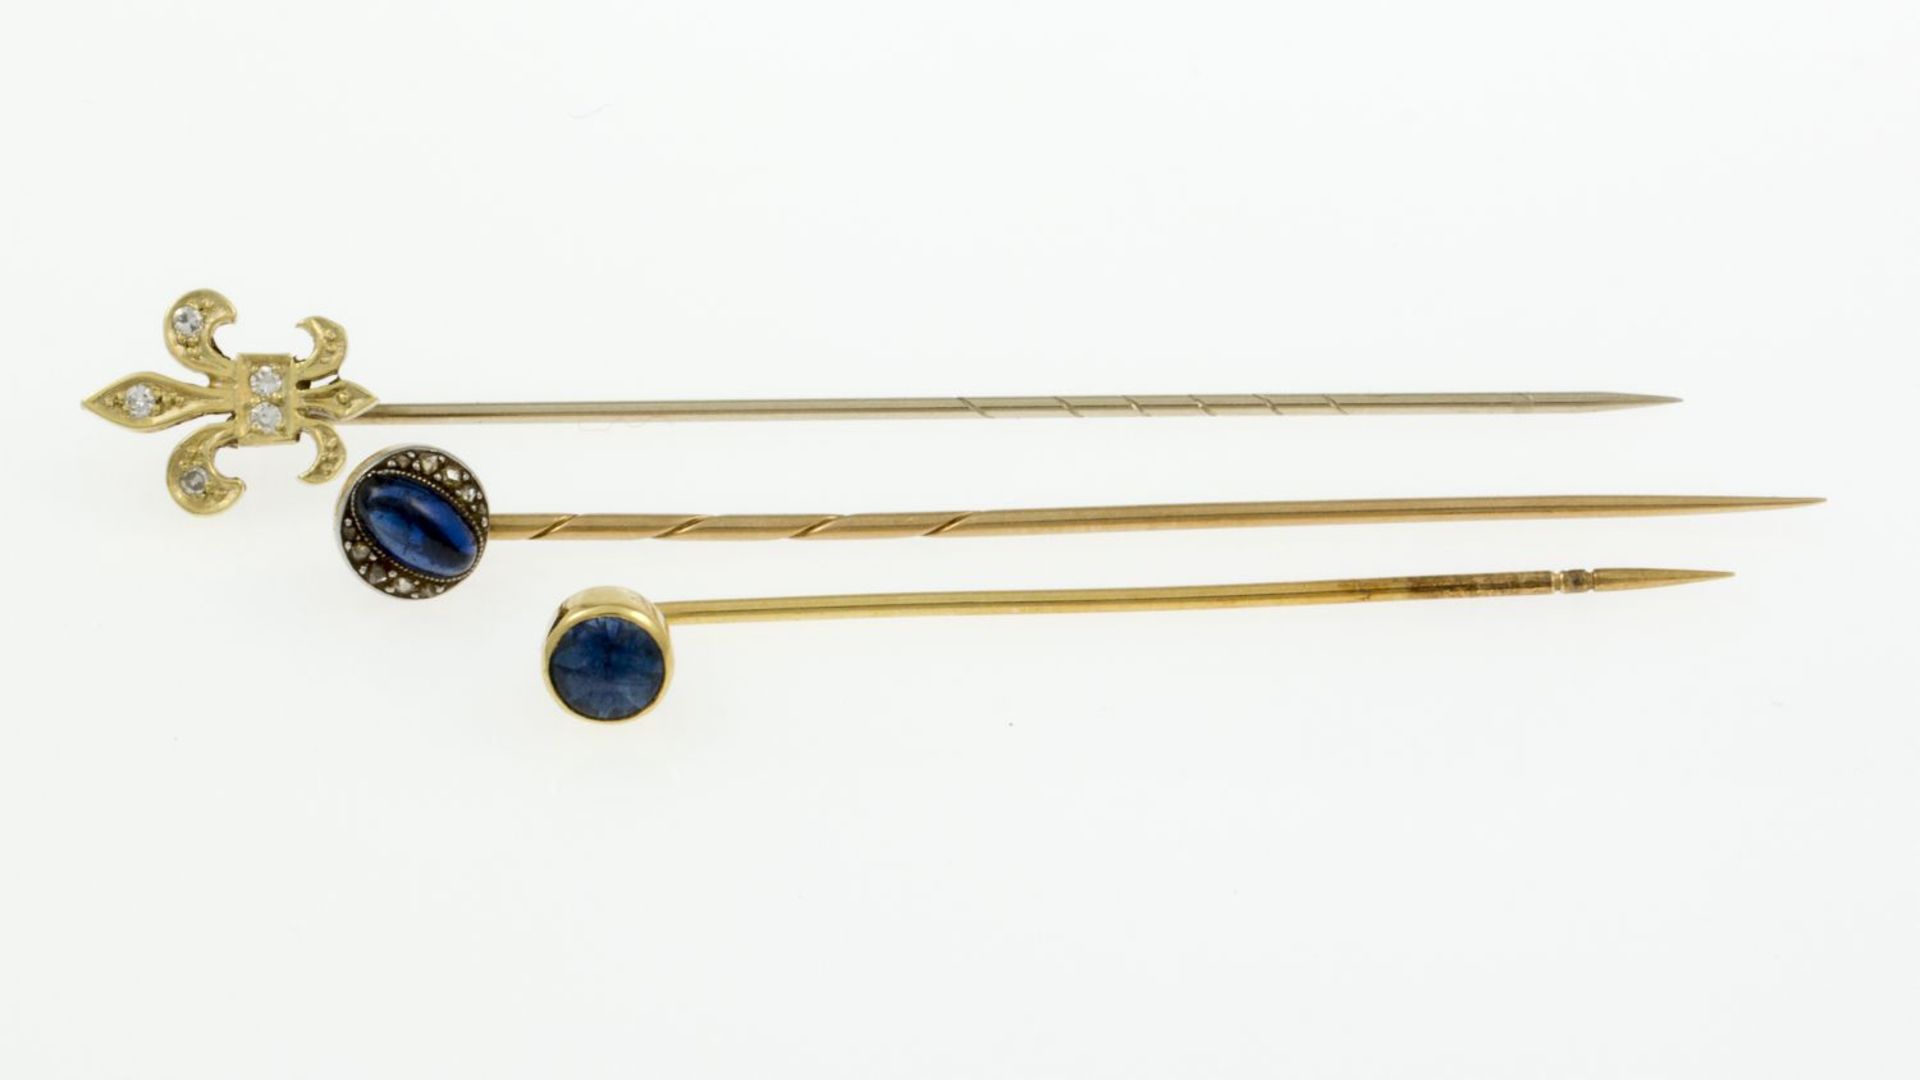 Drei KrawattennadelnGelbgold 585 (geprüft). U.a. Dia.-Rosen und blaue Spinelle. Zus. ca. 3,3 g. - Bild 2 aus 2